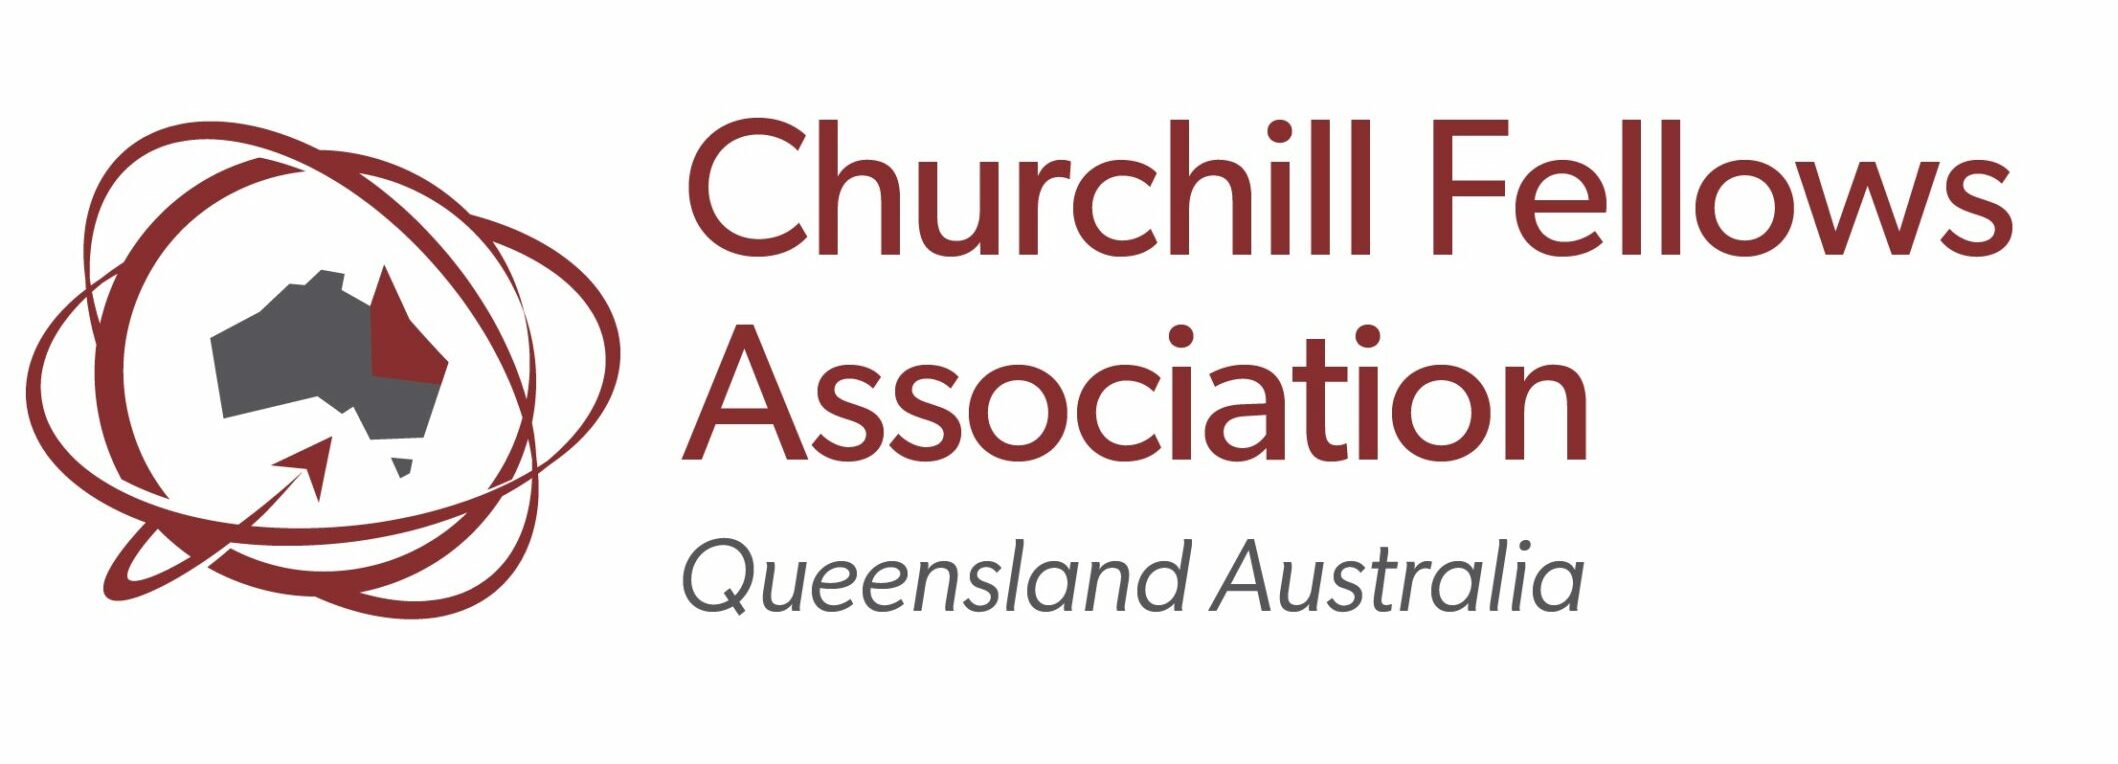 Churchill Fellows Association of QLD